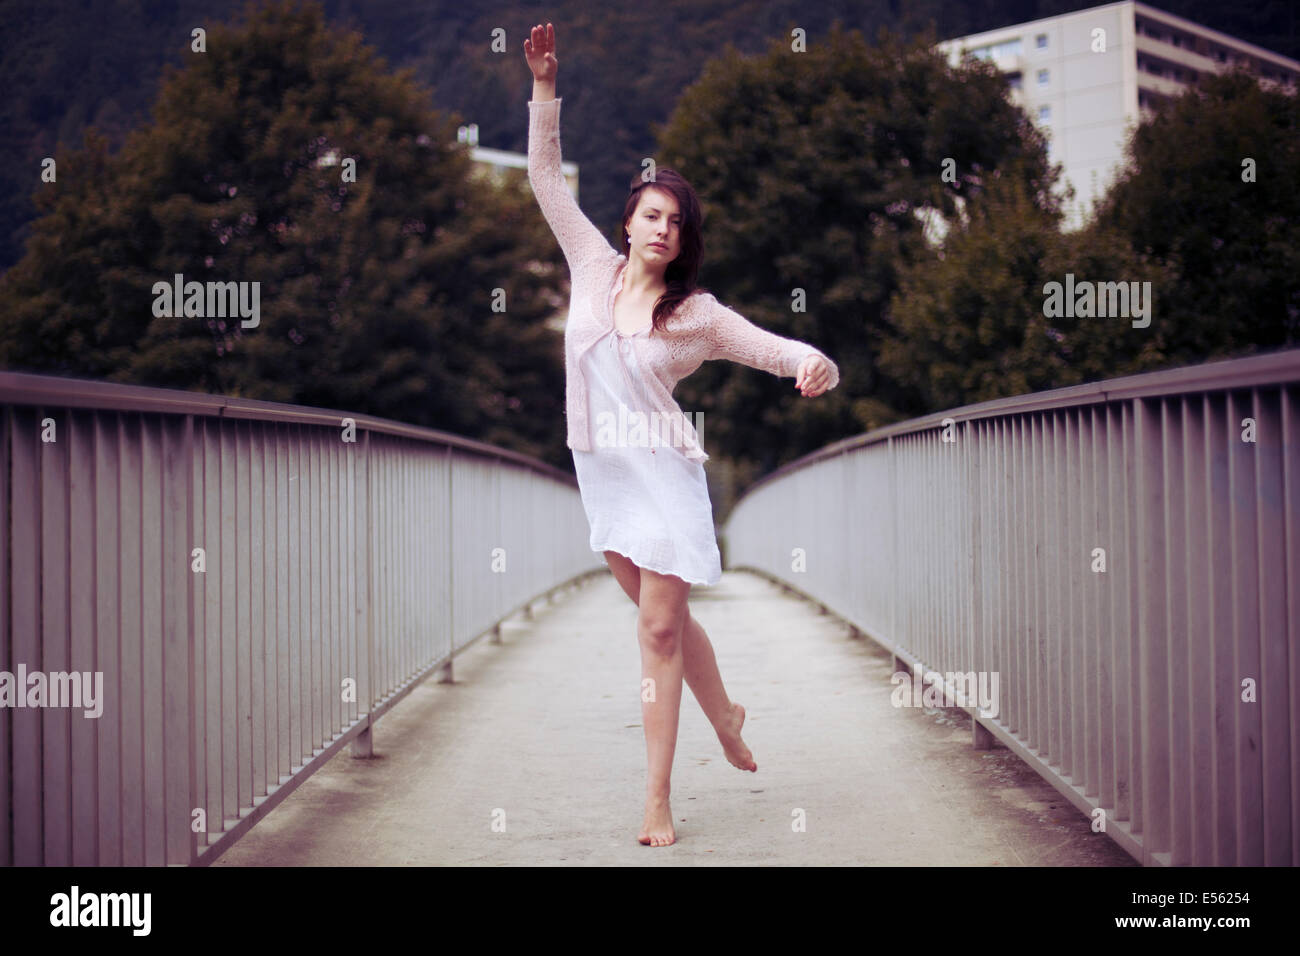 Junge Frau tanzen barfuß auf einer Brücke Stockfoto